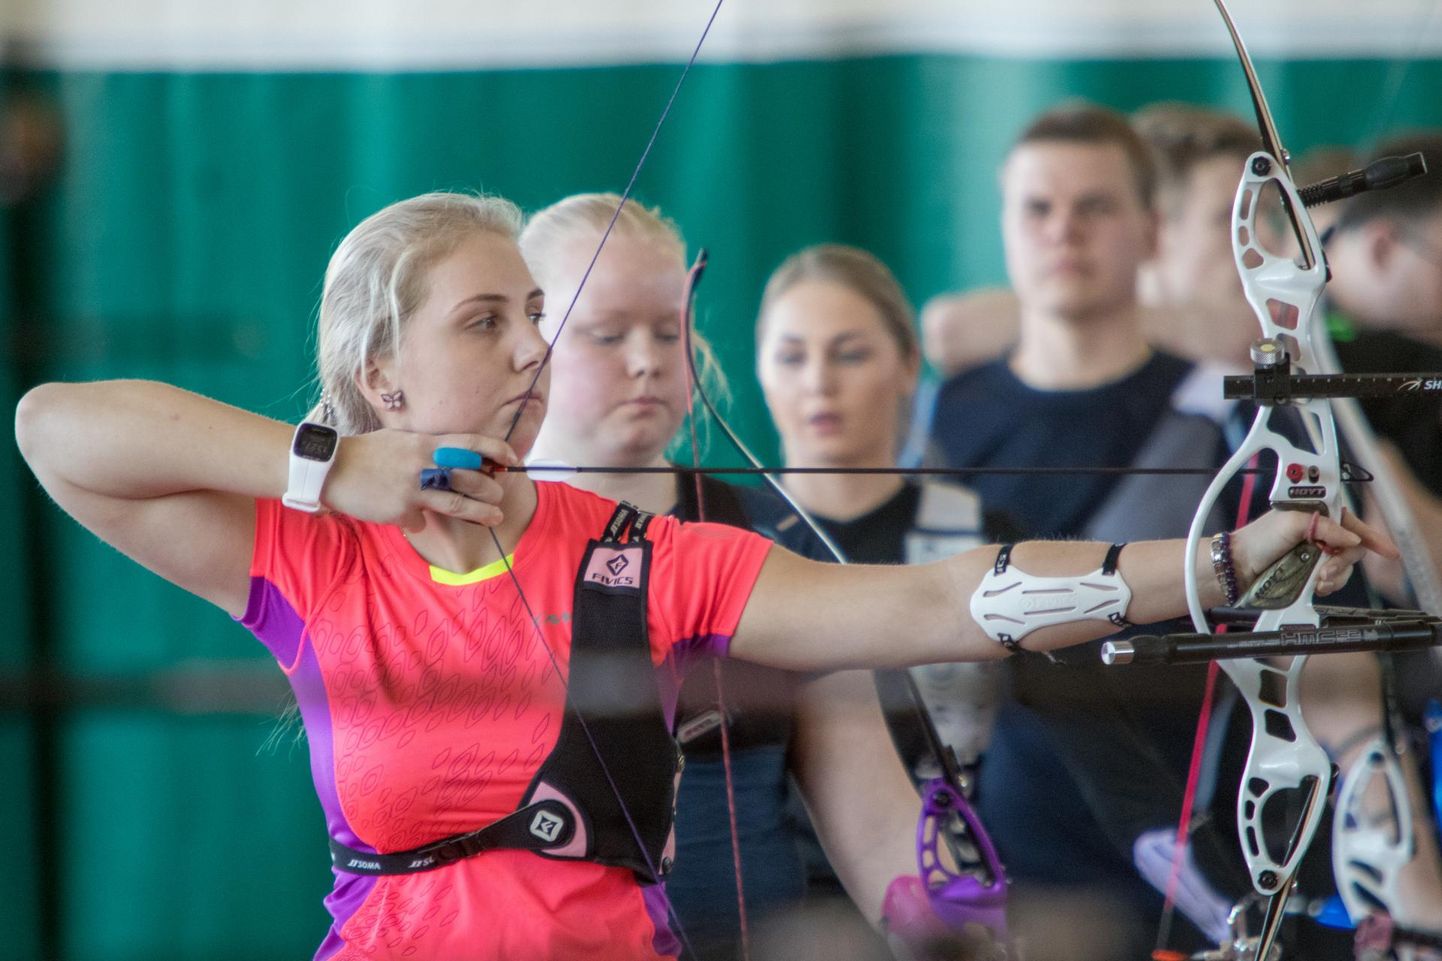 Viljandlane Laura Nurmsalu teenis Eesti täiskasvanute karikavõistlustel sportvibulaskmises teise koha. Järgmisel nädalal ootavad teda Hollandis ees maailmameistrivõistlused.